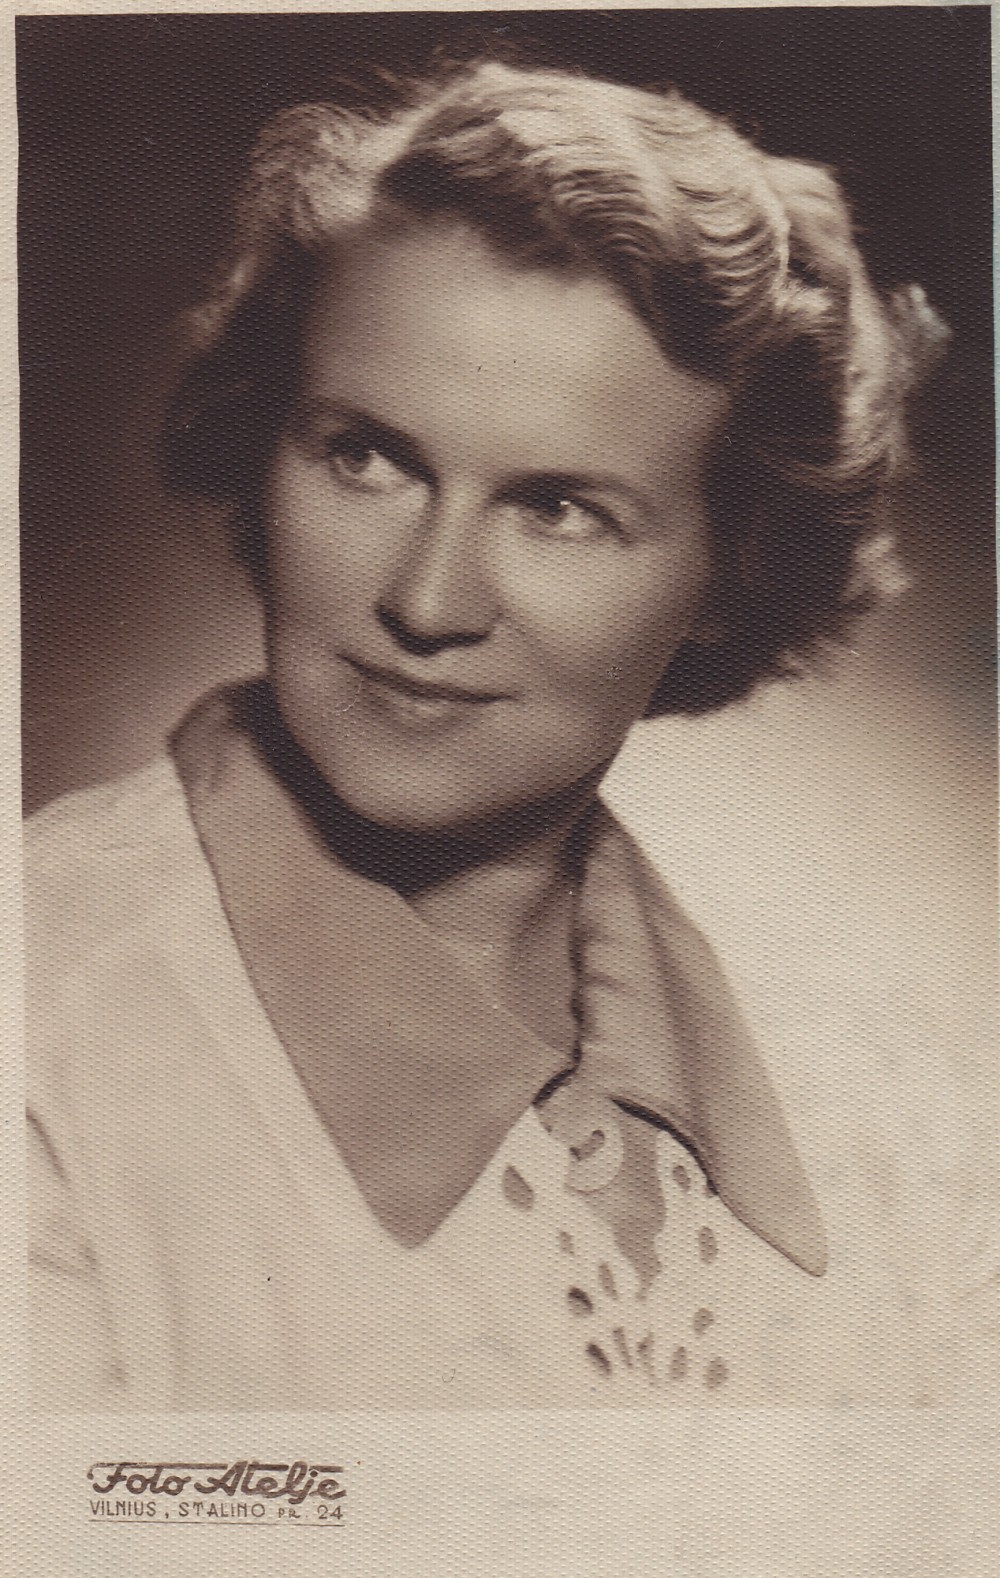 A. Liobytė – Valstybinės grožinės literatūros leidyklos Vaikų ir jaunimo redakcijos vedėja. Vilnius, 1955 m.